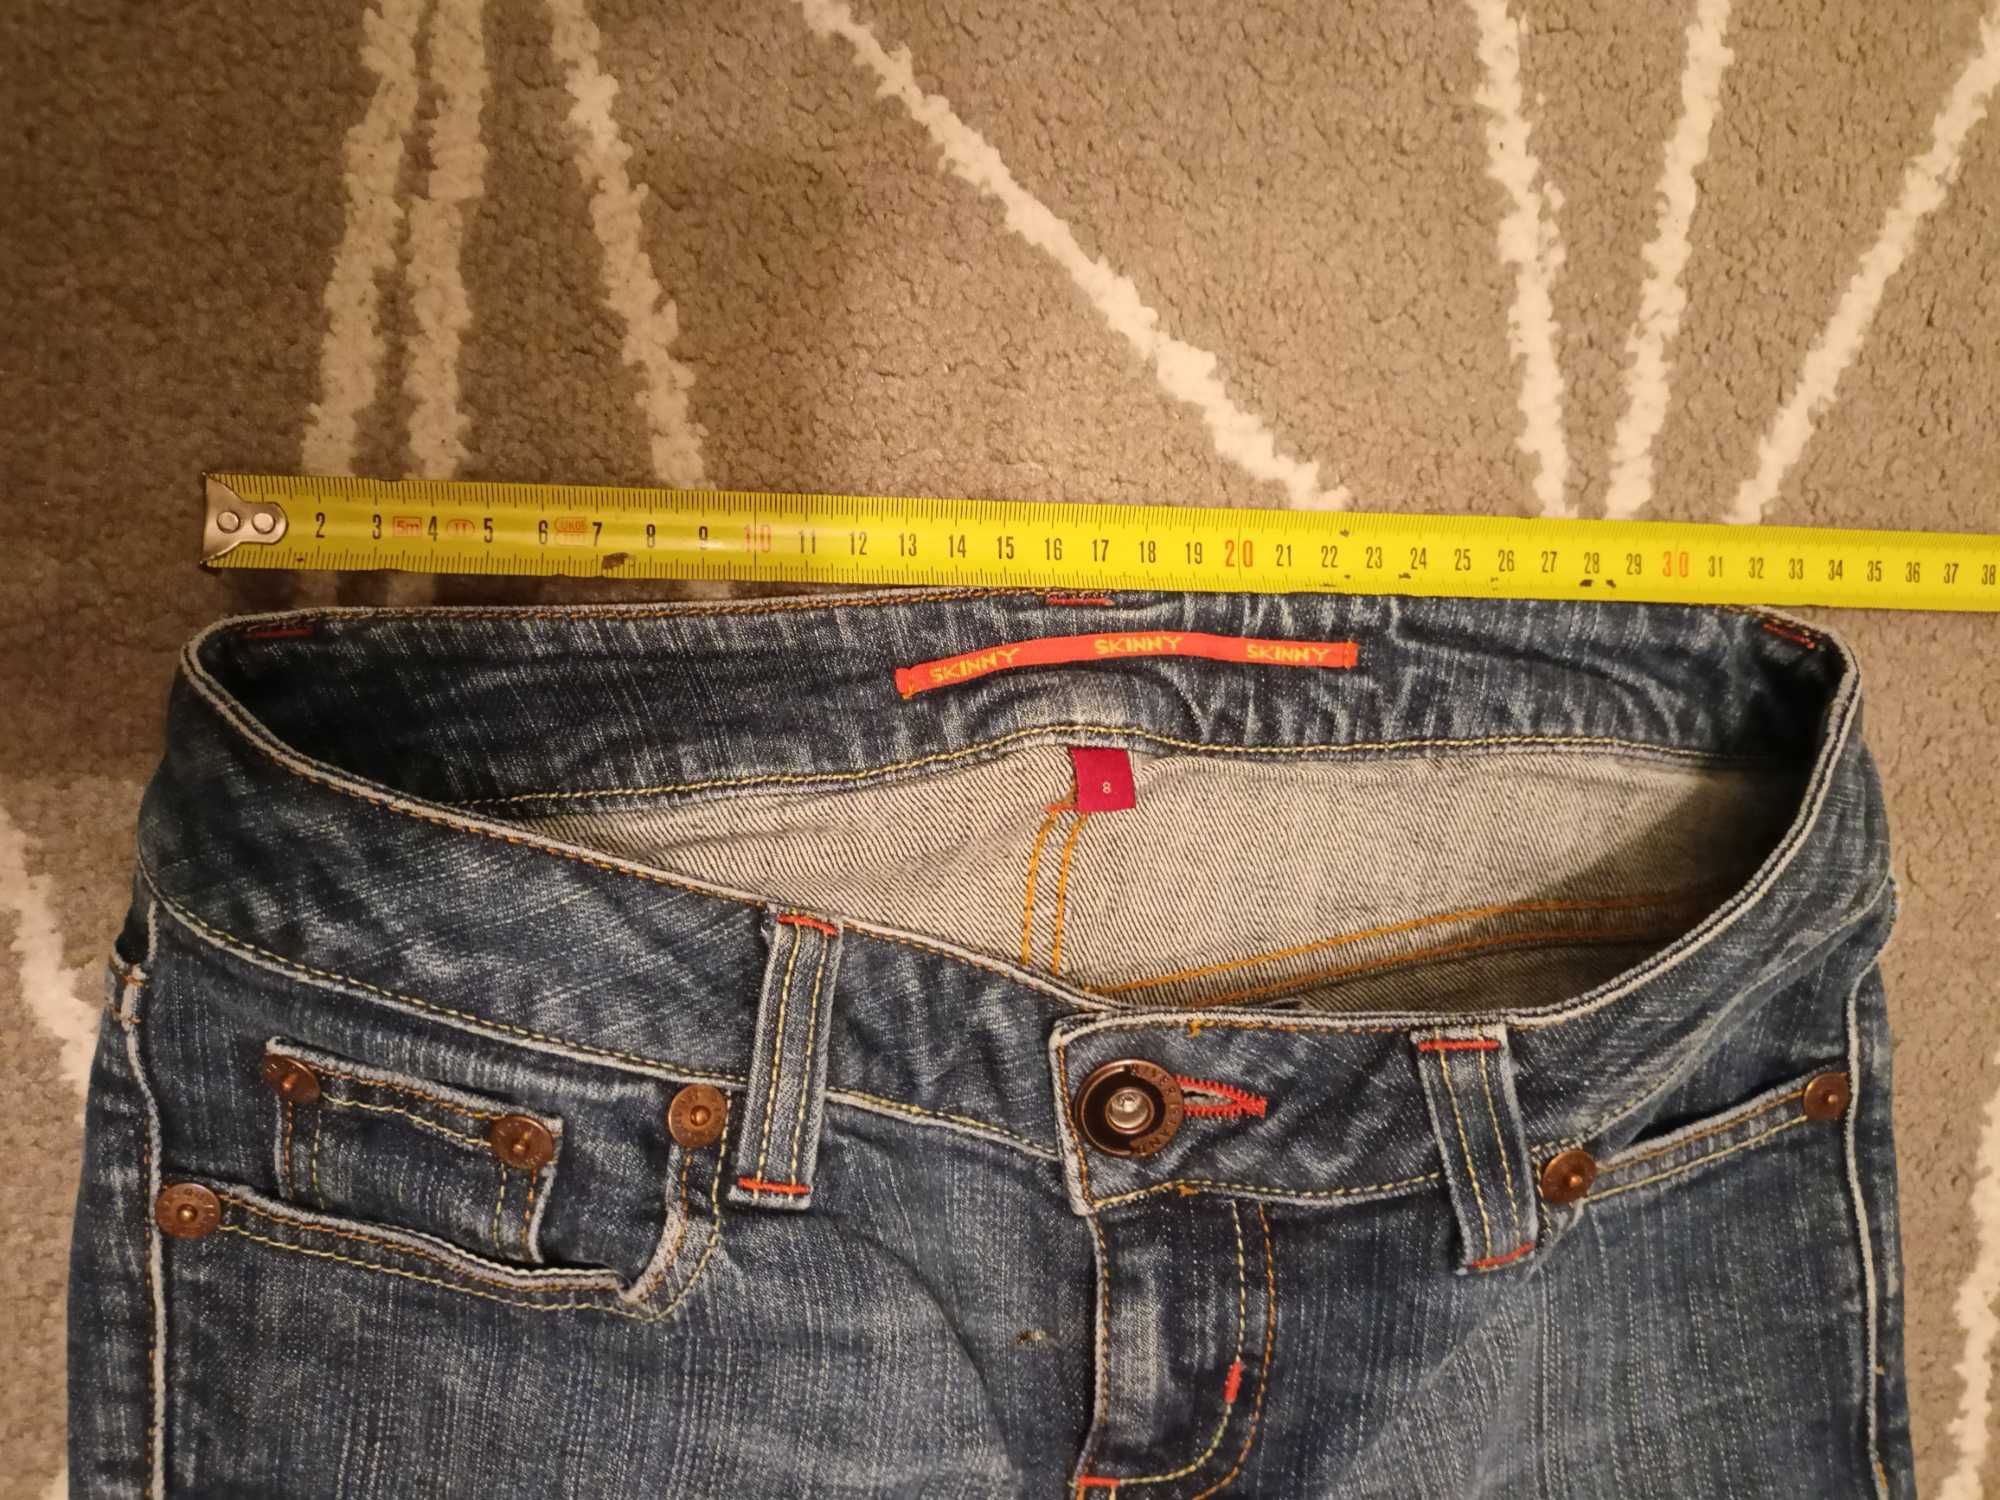 Spodnie jeans rozmiar S